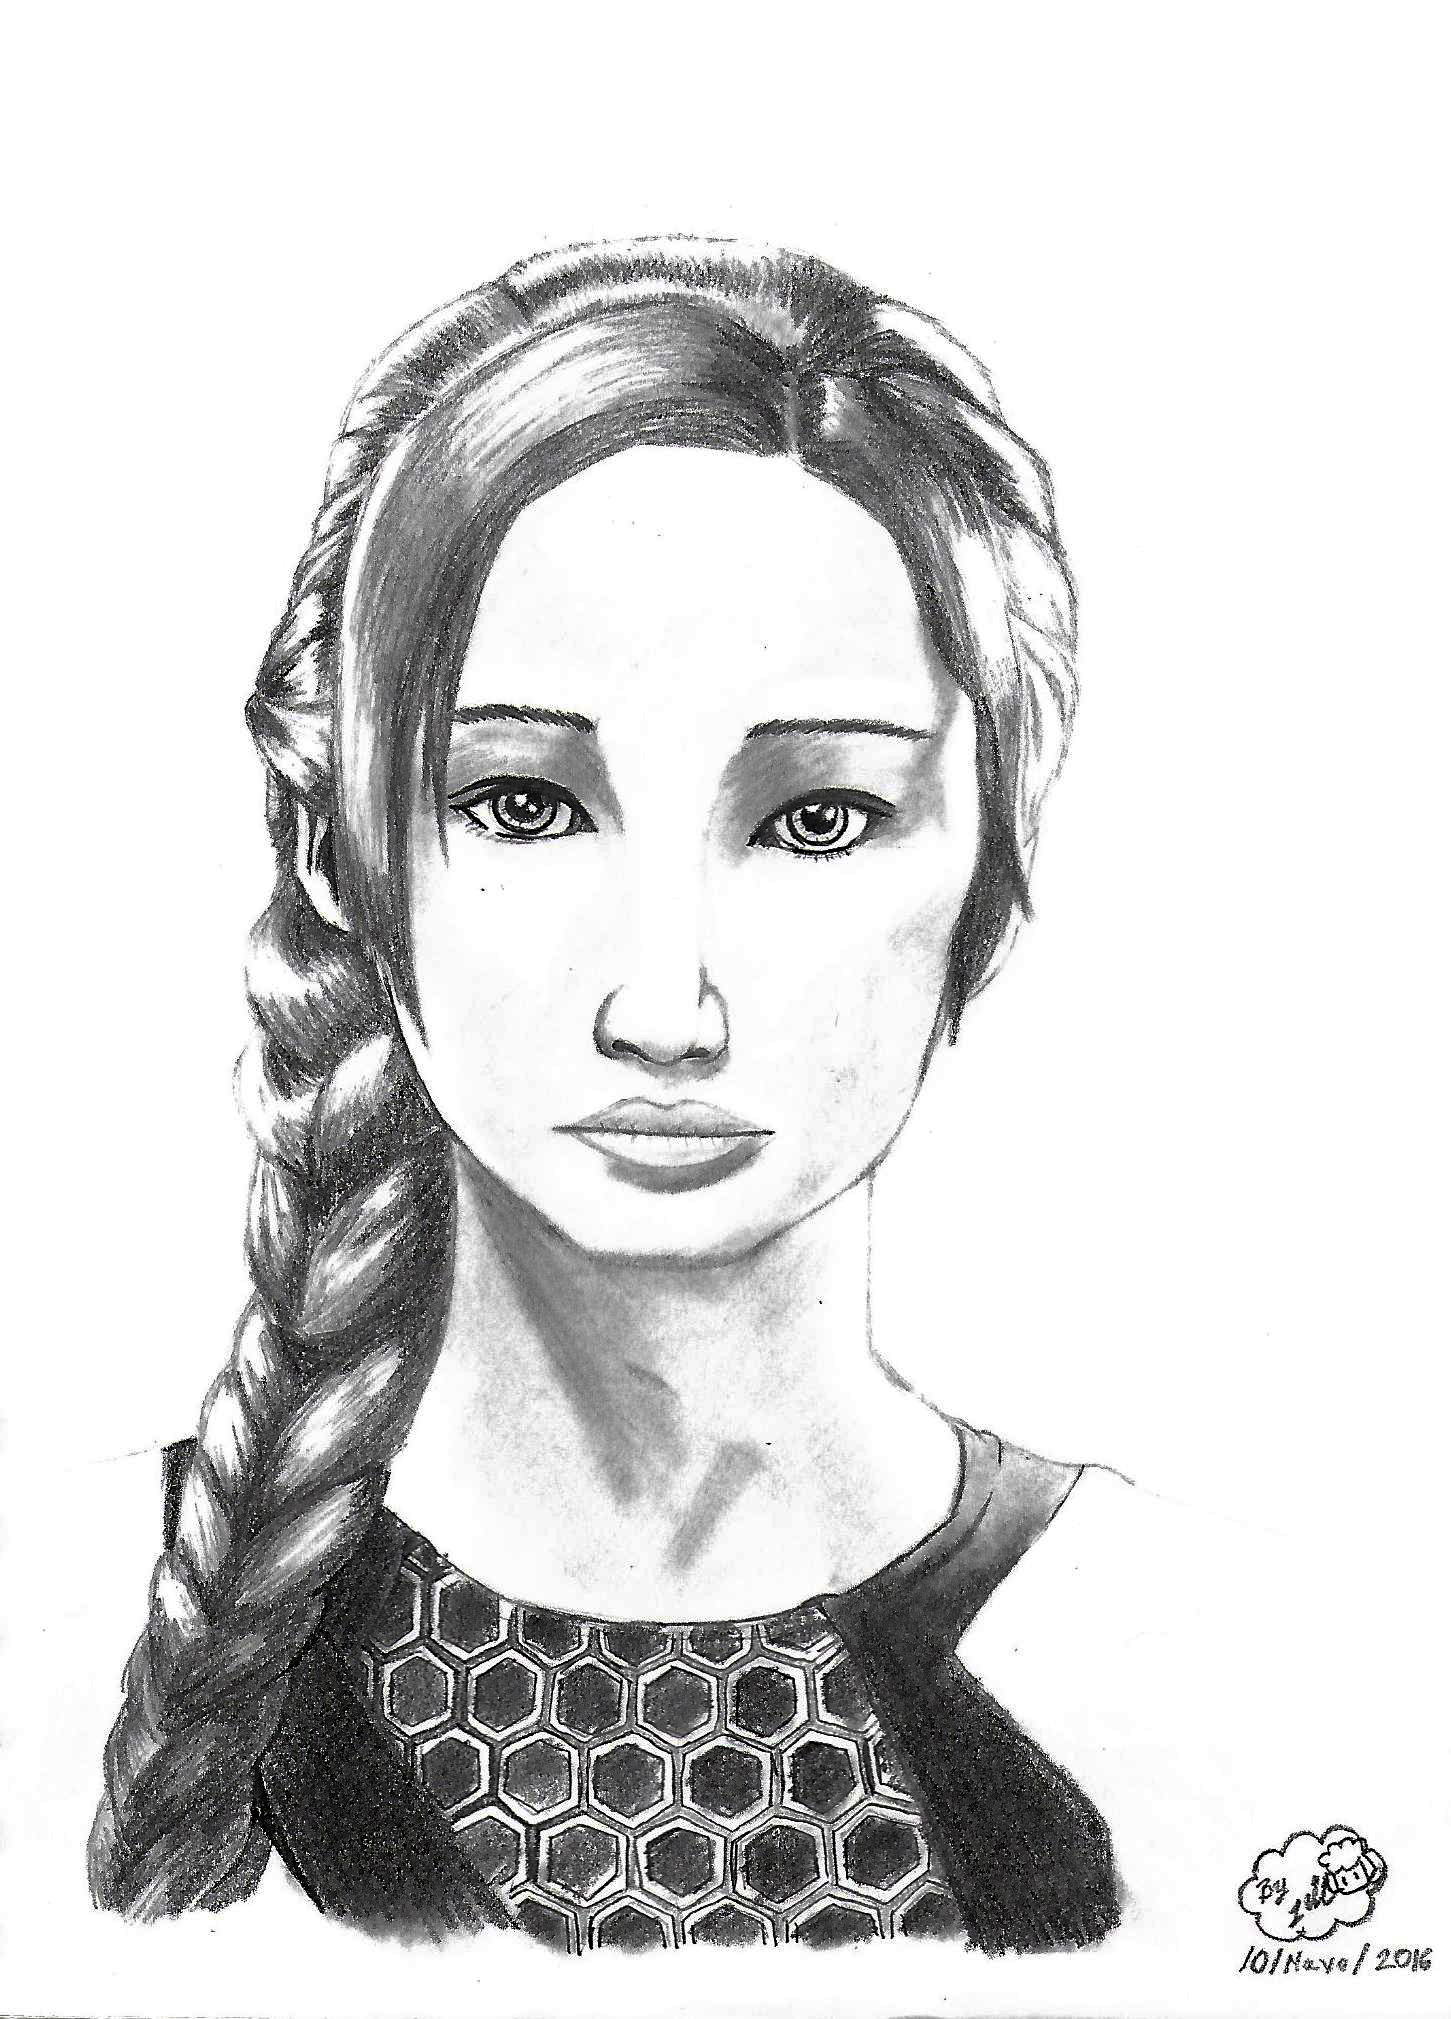 Dibujillos en Tiempo libre by Jill Sutcliff  RE-ABIERTO - Página 15 Katniss3_by_jillsutcliff-da25dfe